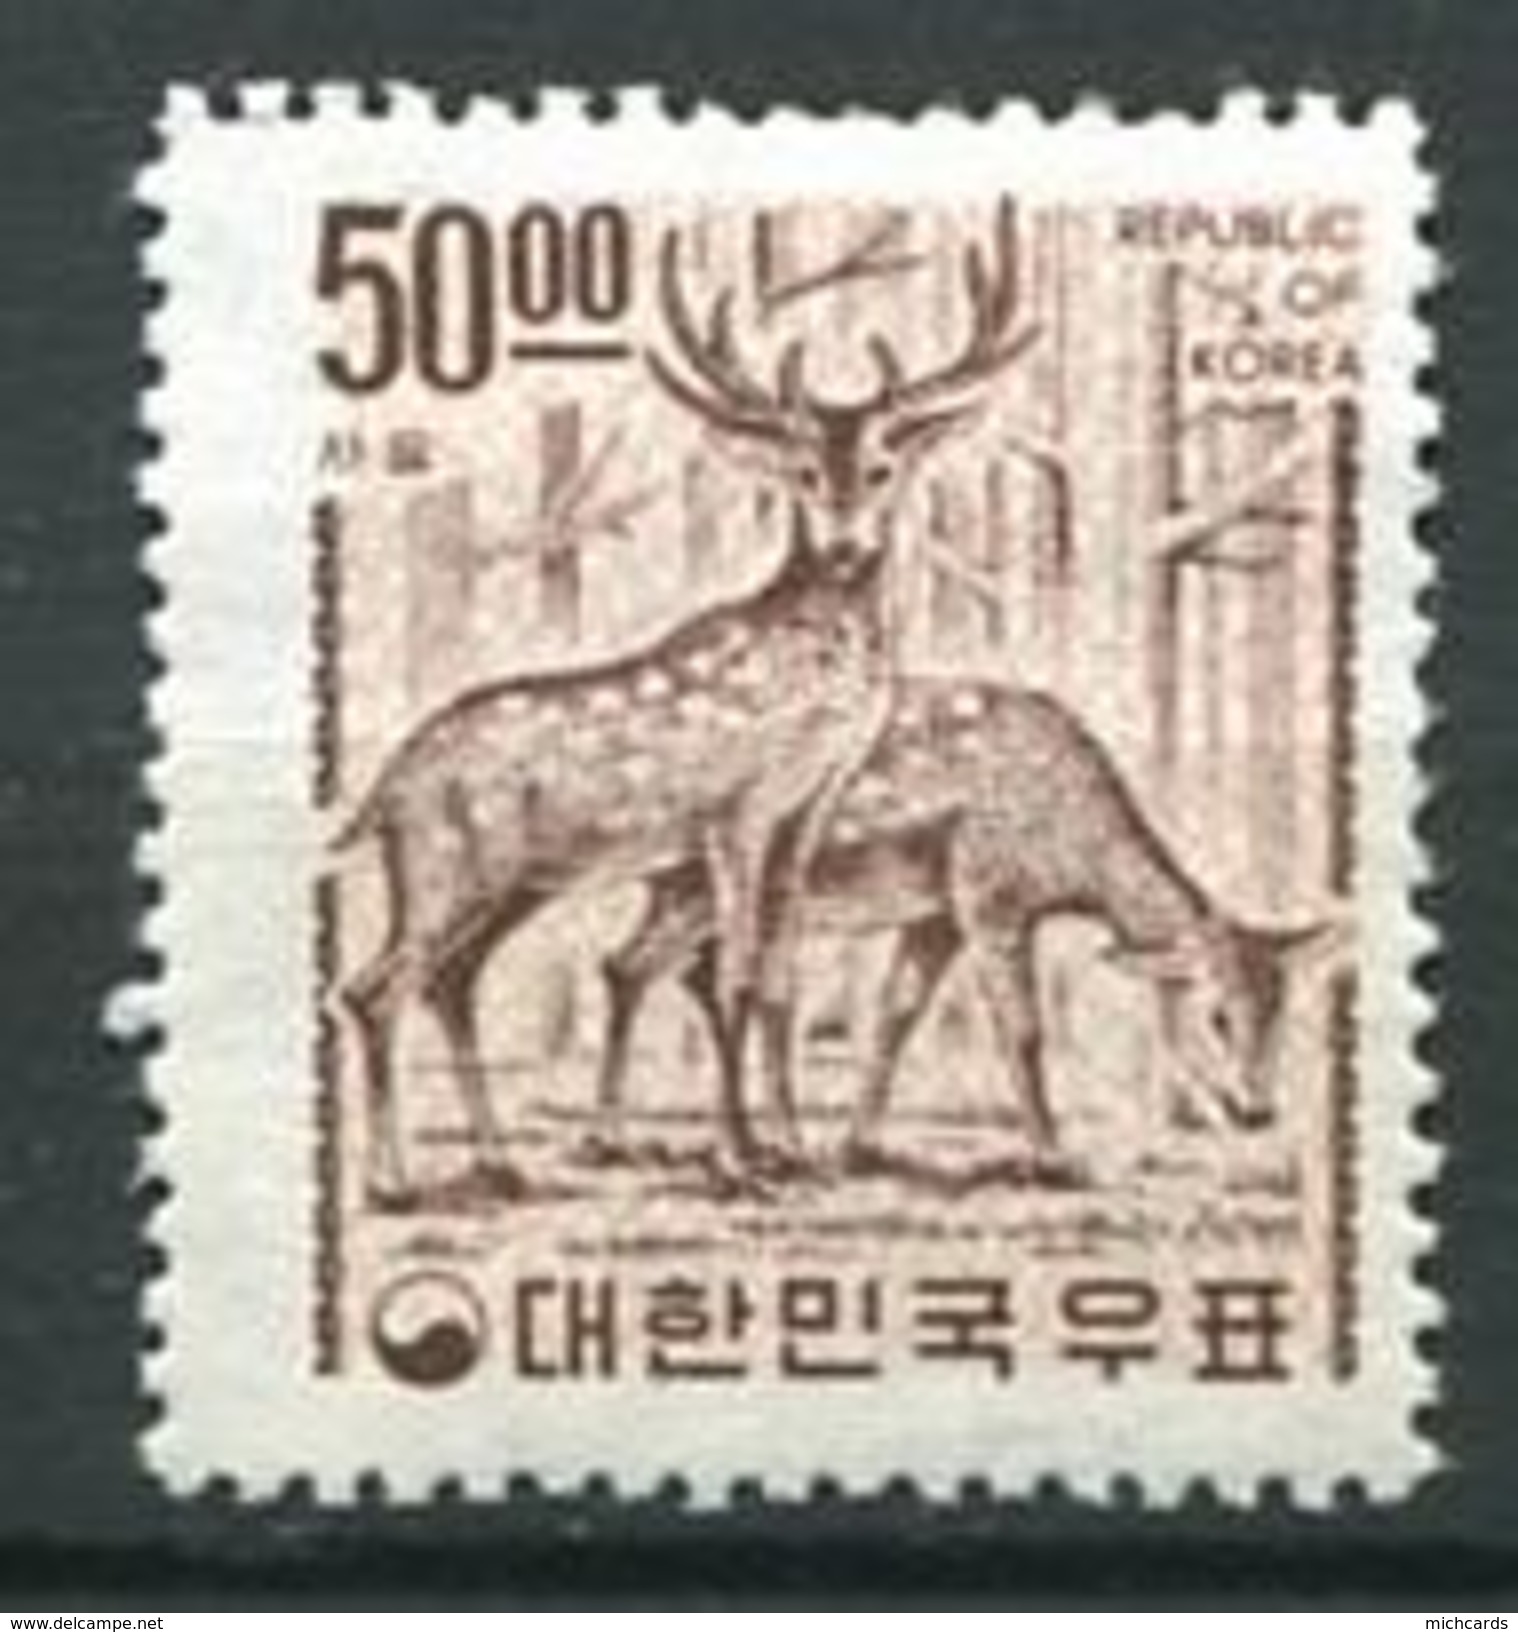 207 COREE SUD 1967 - Yvert 473 Decentre A Droite - Cerf - Neuf ** (MNH) Sans Trace De Charniere - Korea, South